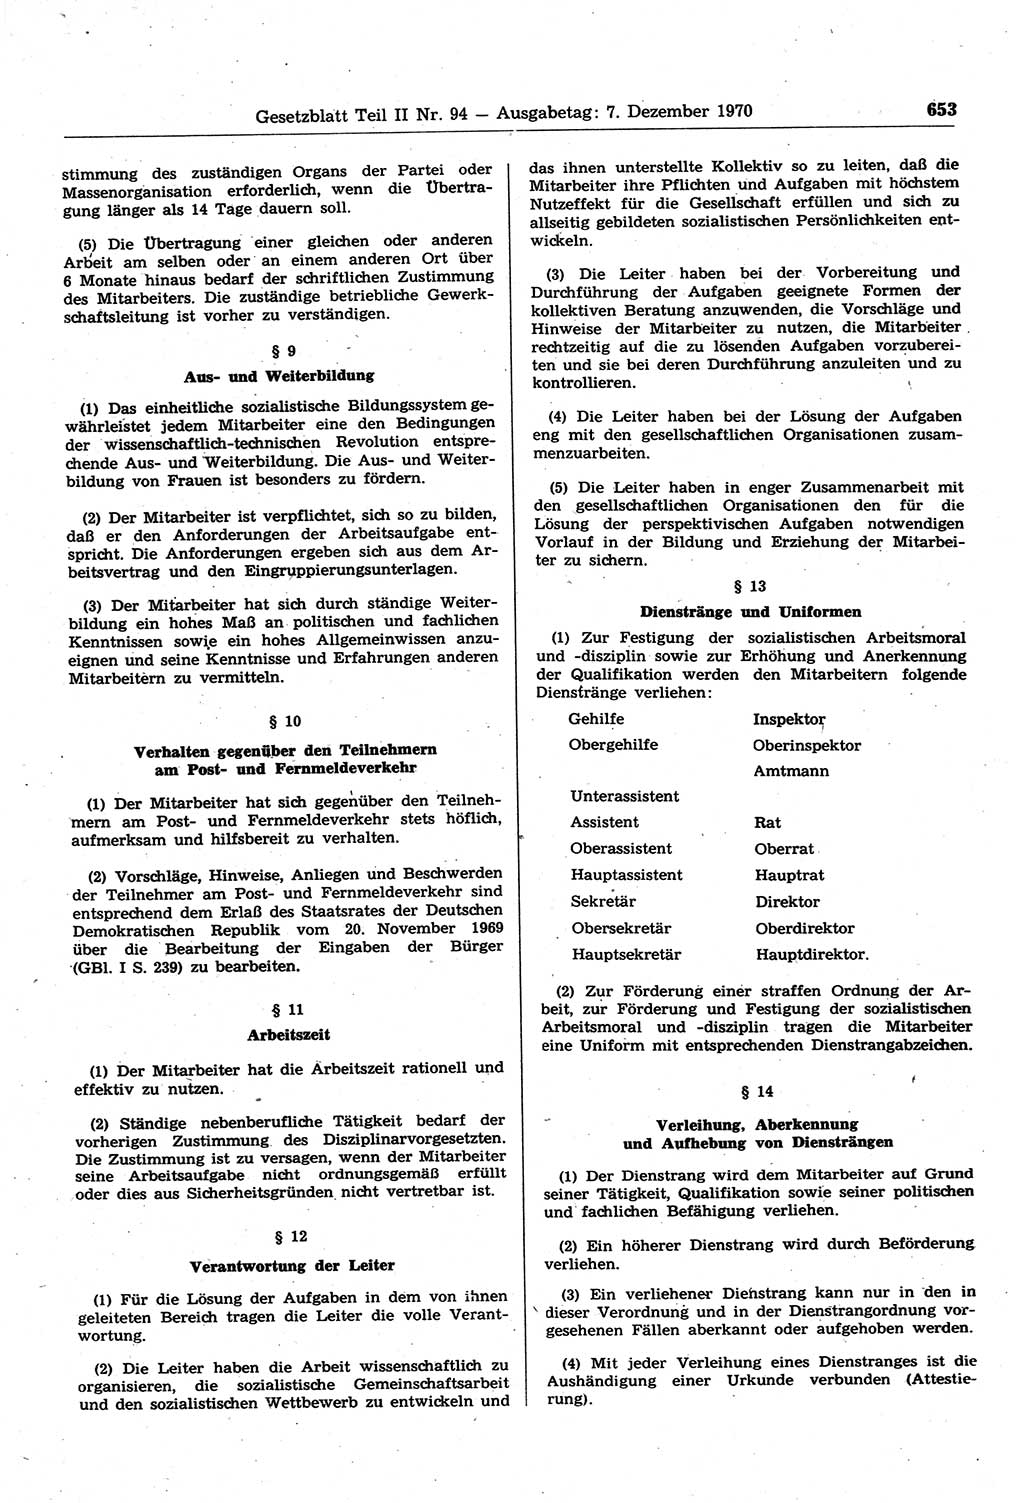 Gesetzblatt (GBl.) der Deutschen Demokratischen Republik (DDR) Teil ⅠⅠ 1970, Seite 653 (GBl. DDR ⅠⅠ 1970, S. 653)